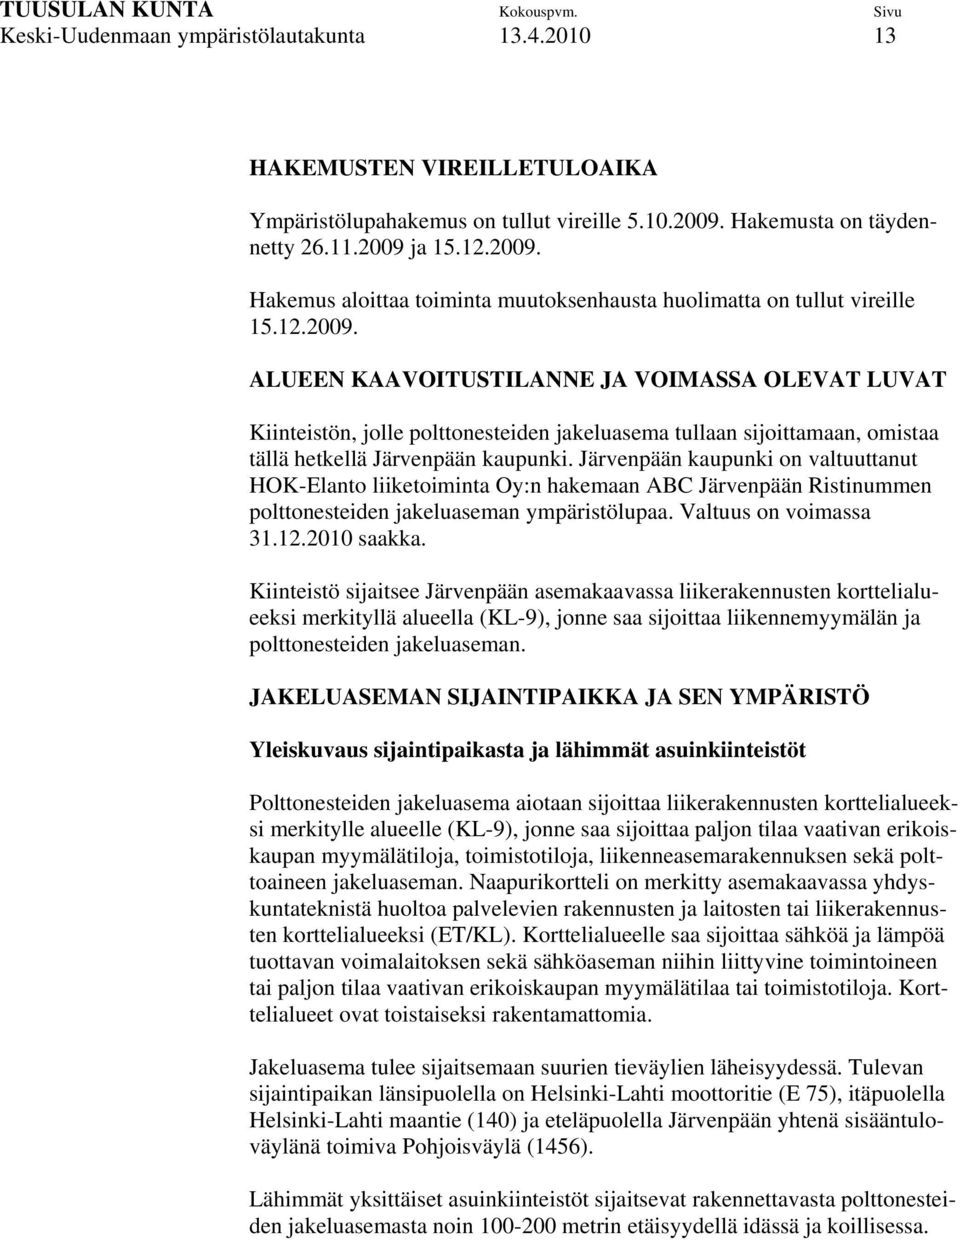 Järvenpään kaupunki on valtuuttanut HOK-Elanto liiketoiminta Oy:n hakemaan ABC Järvenpään Ristinummen polttonesteiden jakeluaseman ympäristölupaa. Valtuus on voimassa 31.12.2010 saakka.